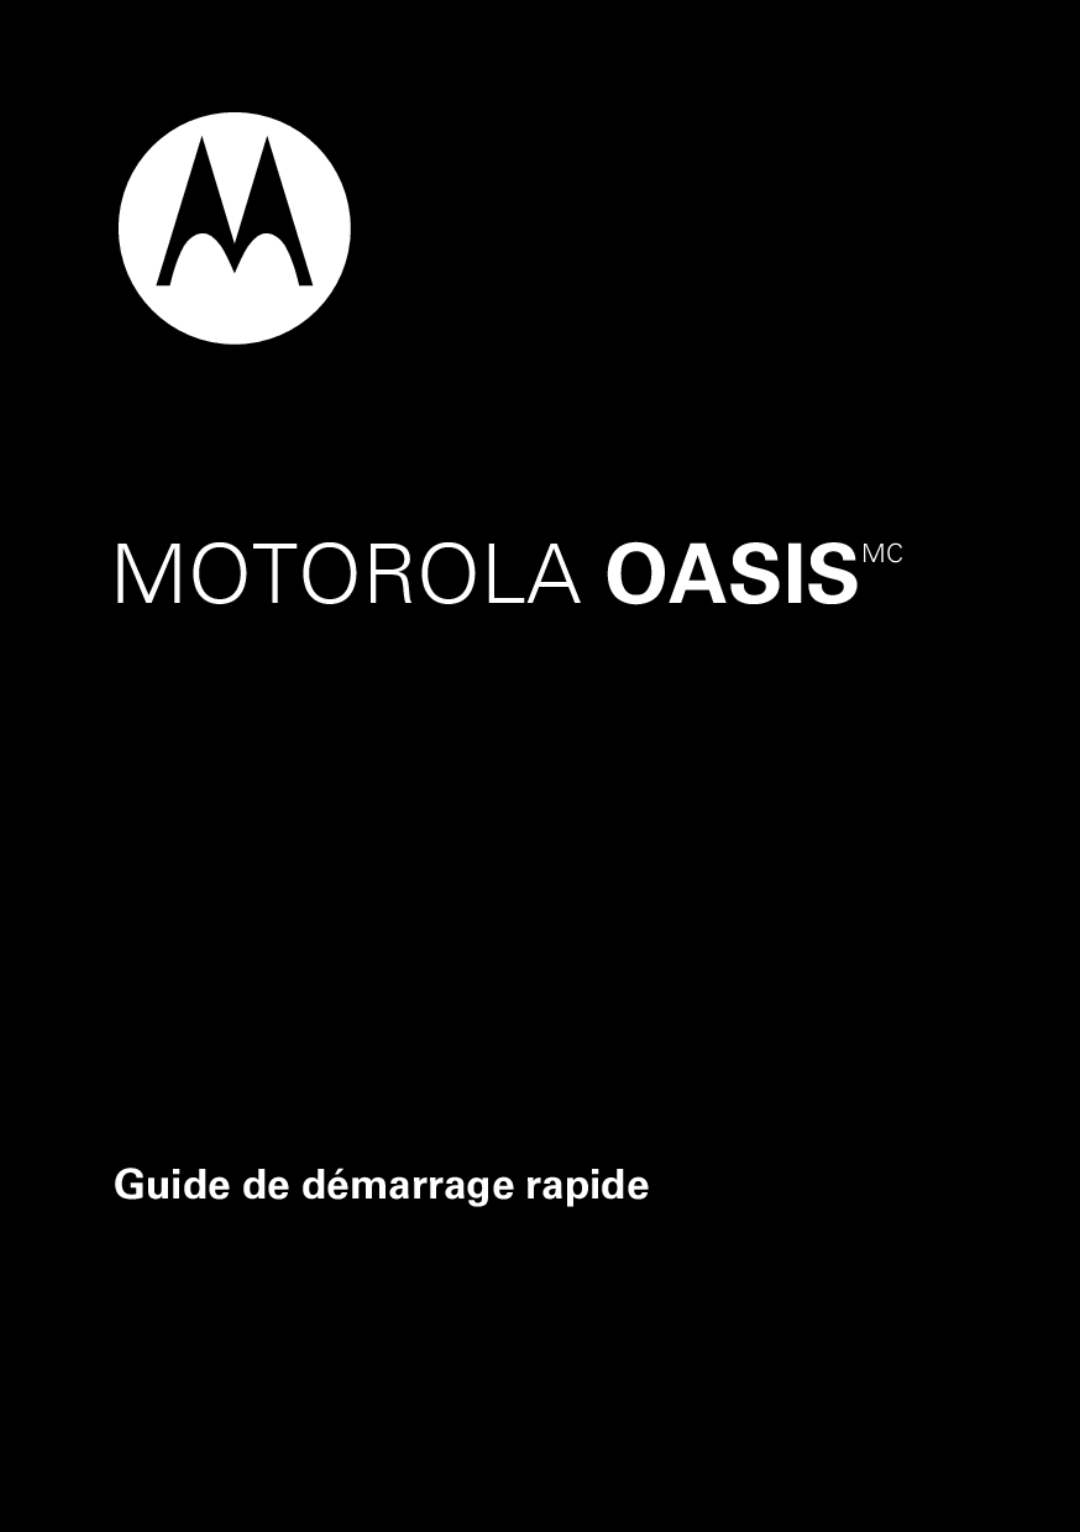 Motorola 89421n quick start Motorola Oasismc, Guide de démarrage rapide 